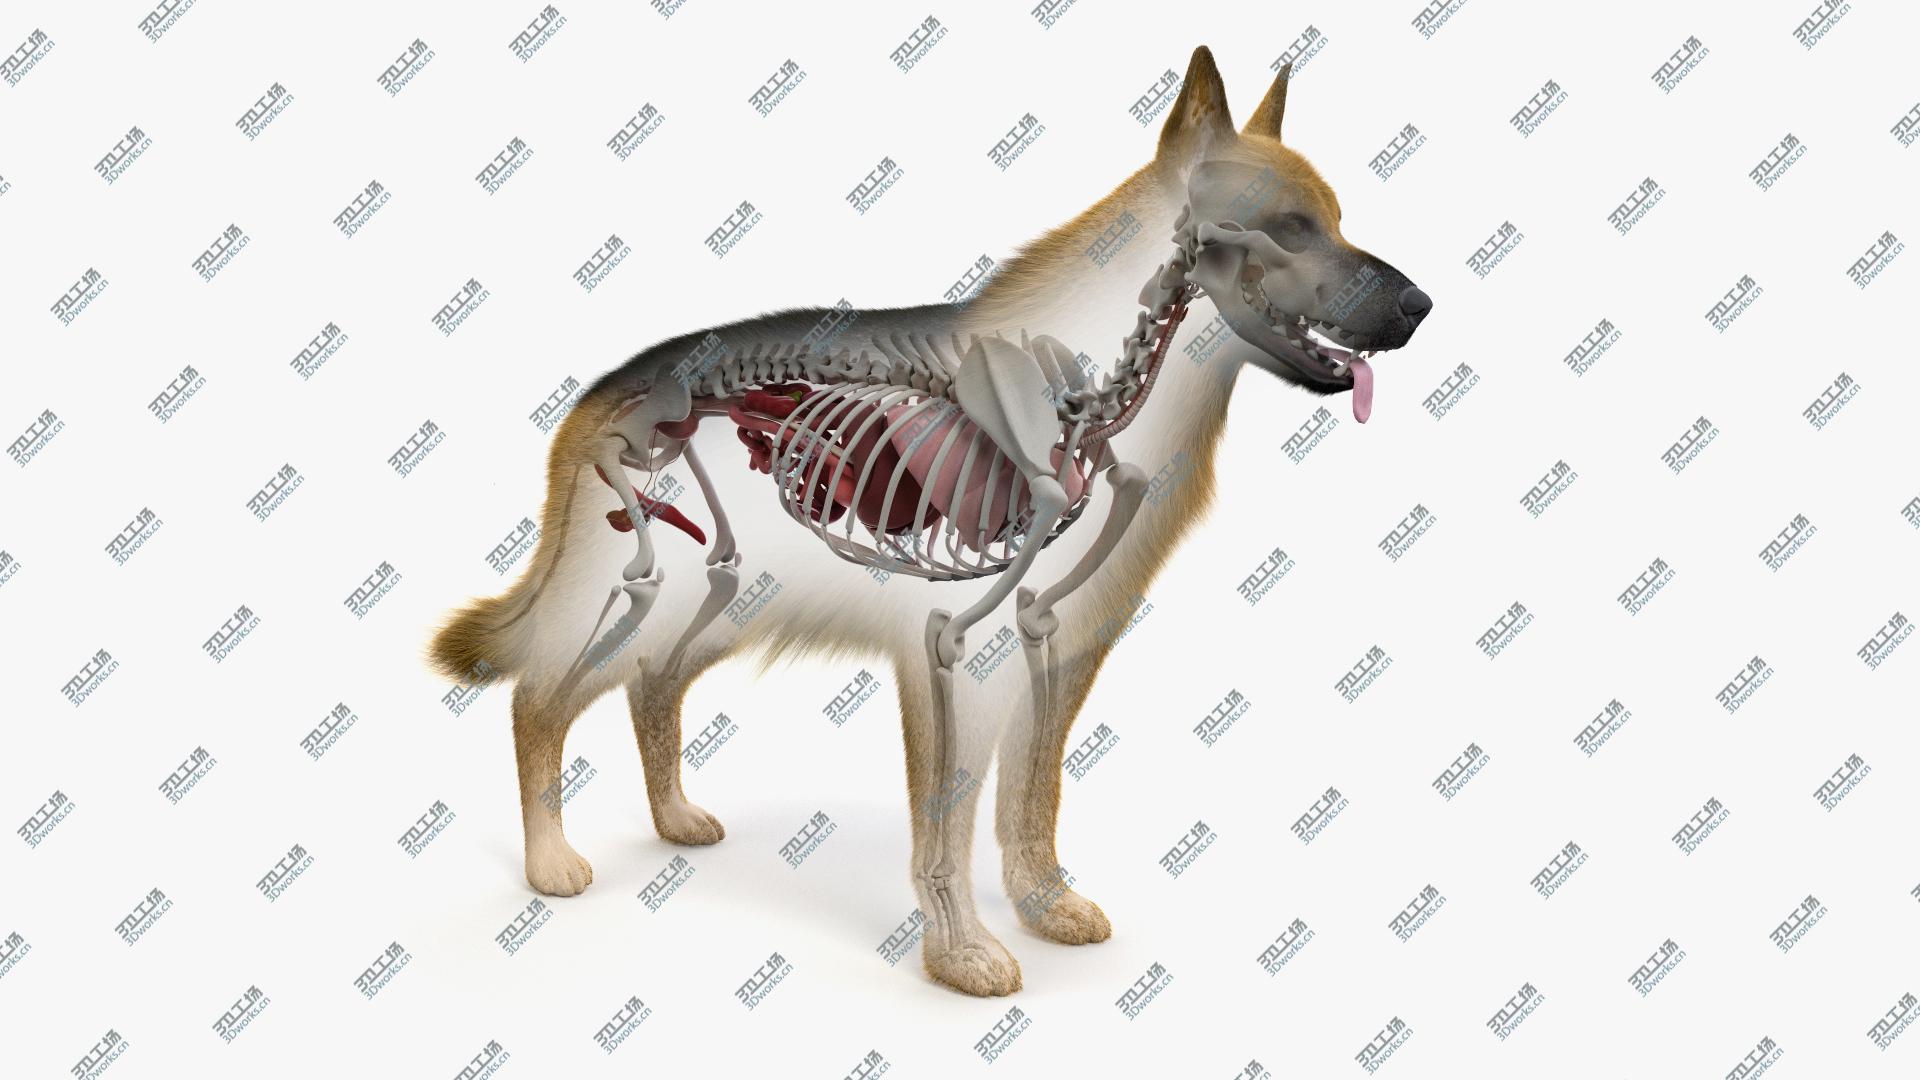 images/goods_img/202105071/Dog Skin, Skeleton And Organs 3D/1.jpg